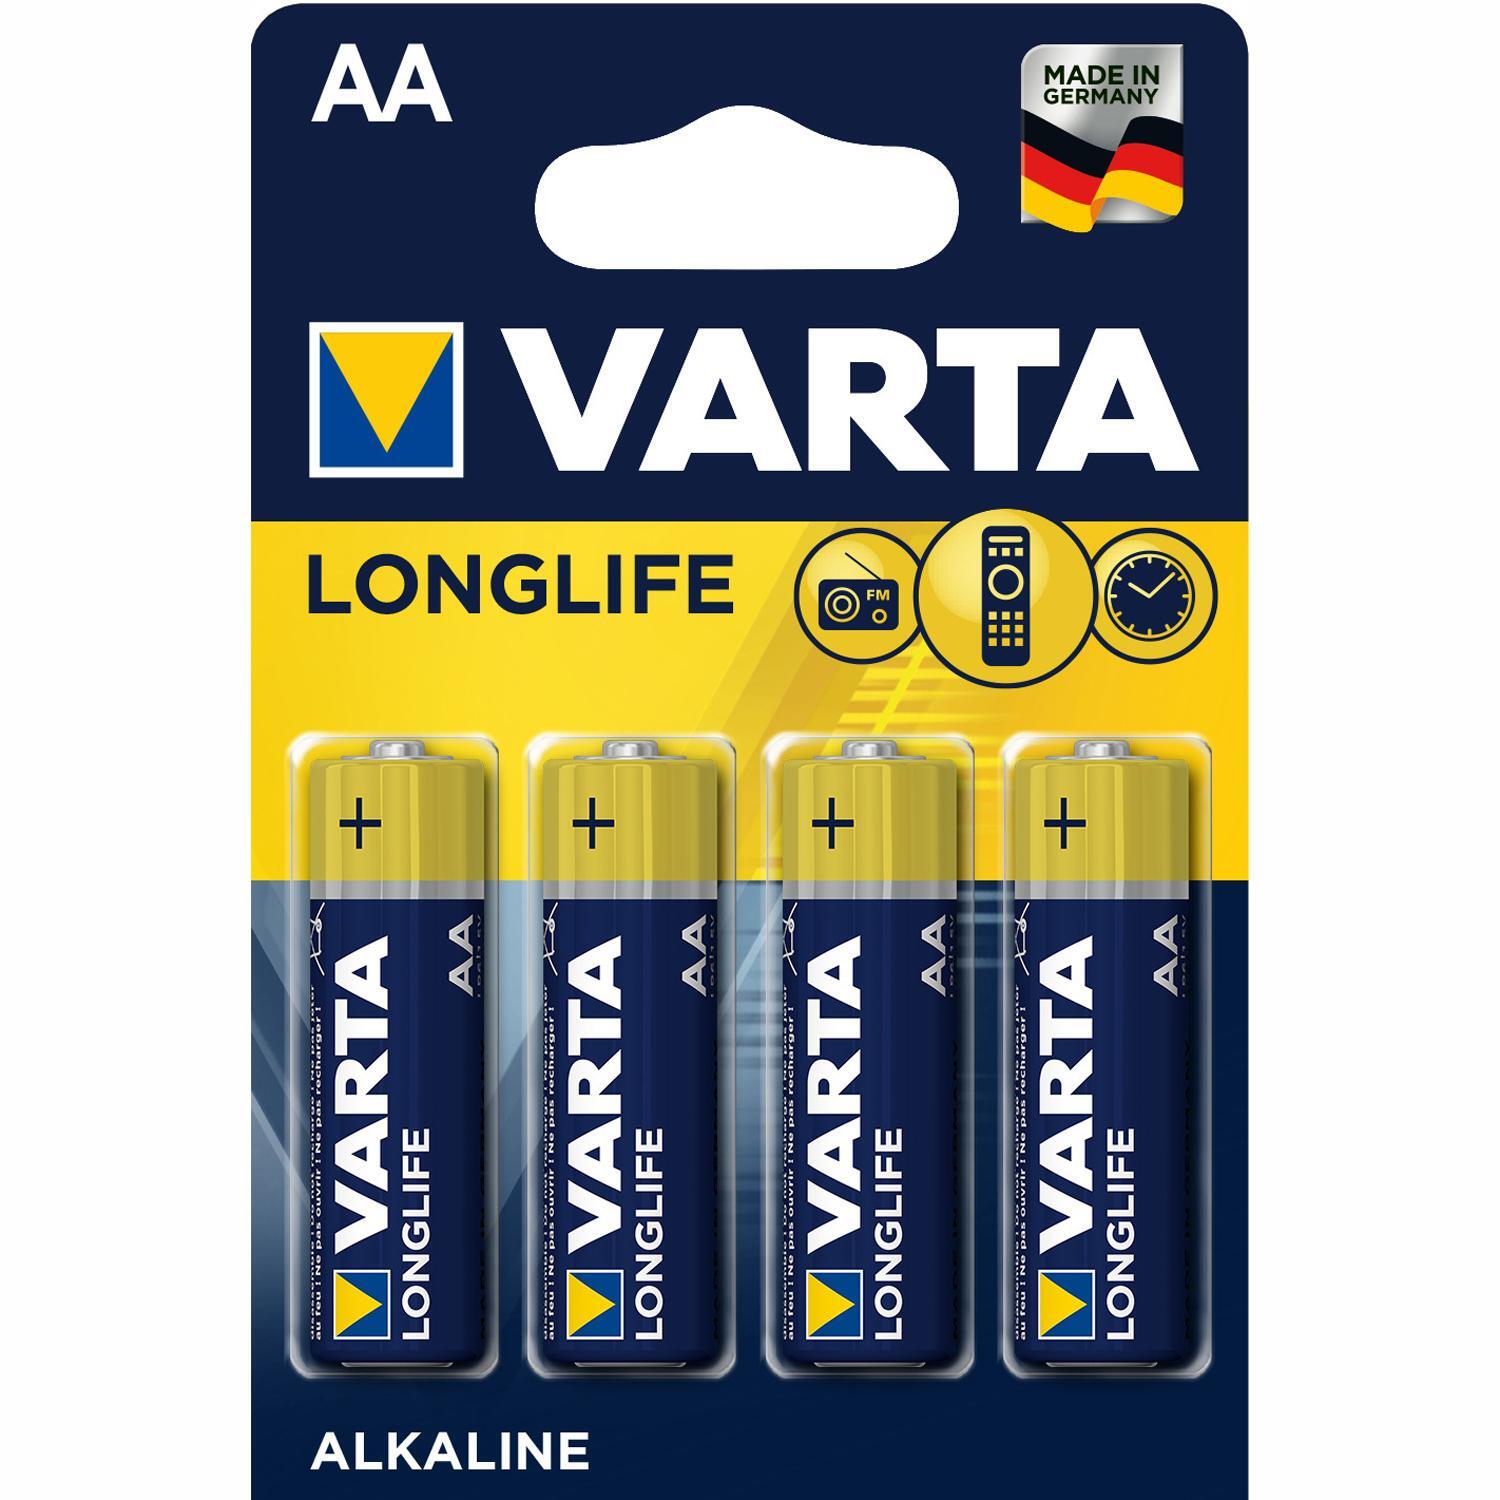 Varta Longlife AA batteri (4-pakk) - Elkjøp